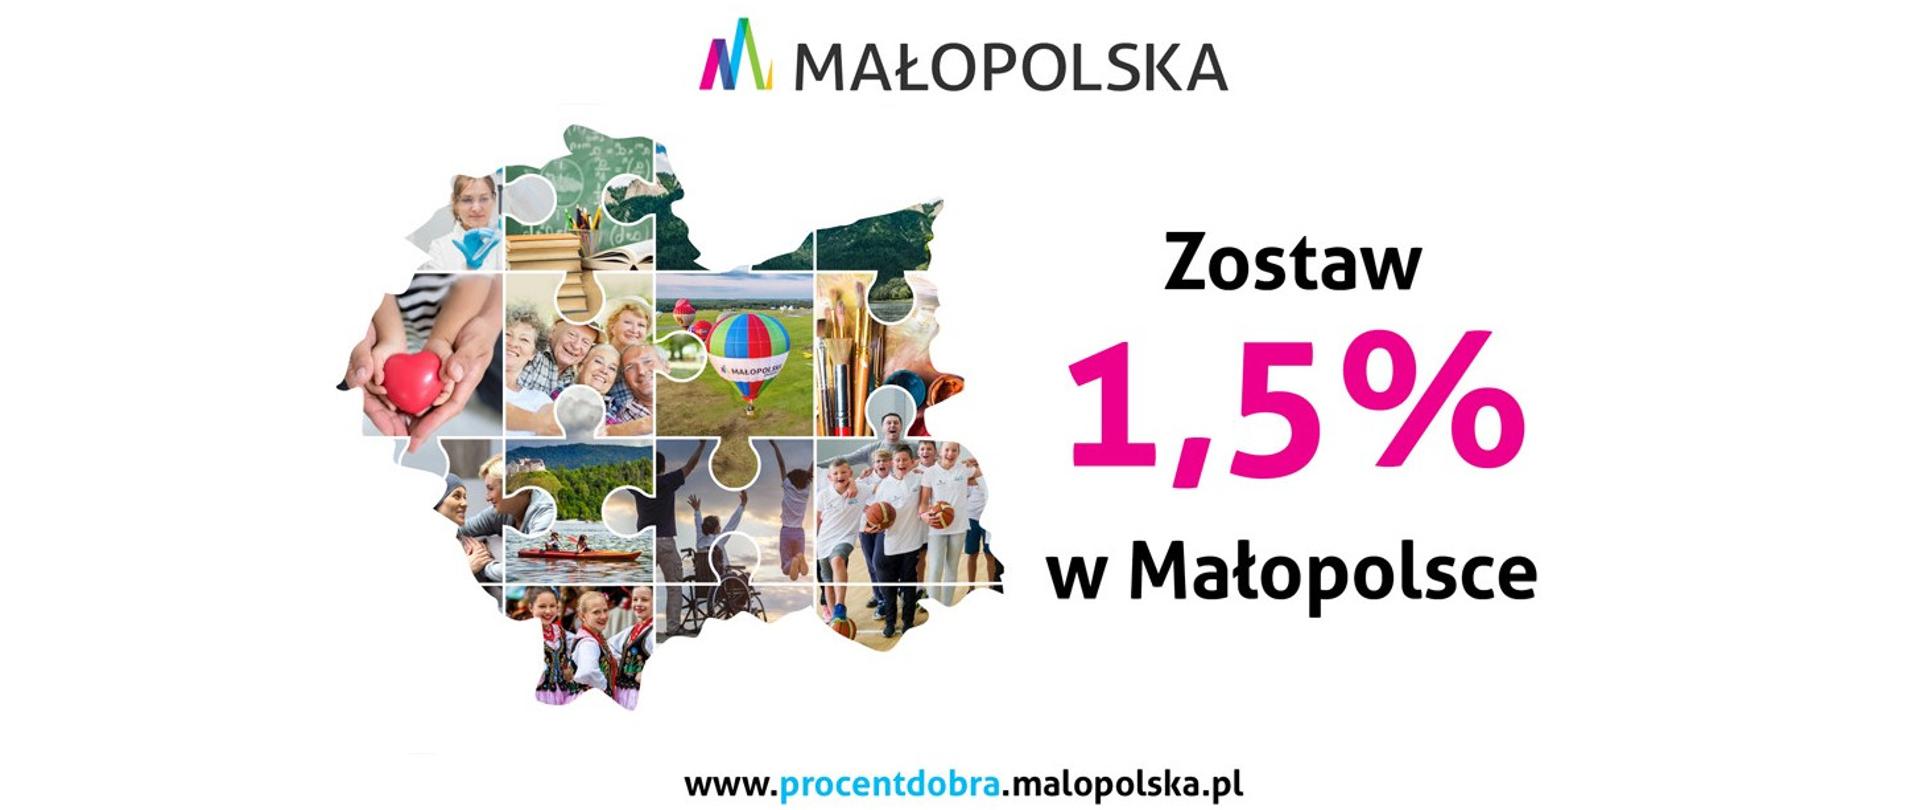 Plakat z logo małopolska oraz fotokolaż z granicami małopolski zachęcający do oddania 1,5% w Małopolsce